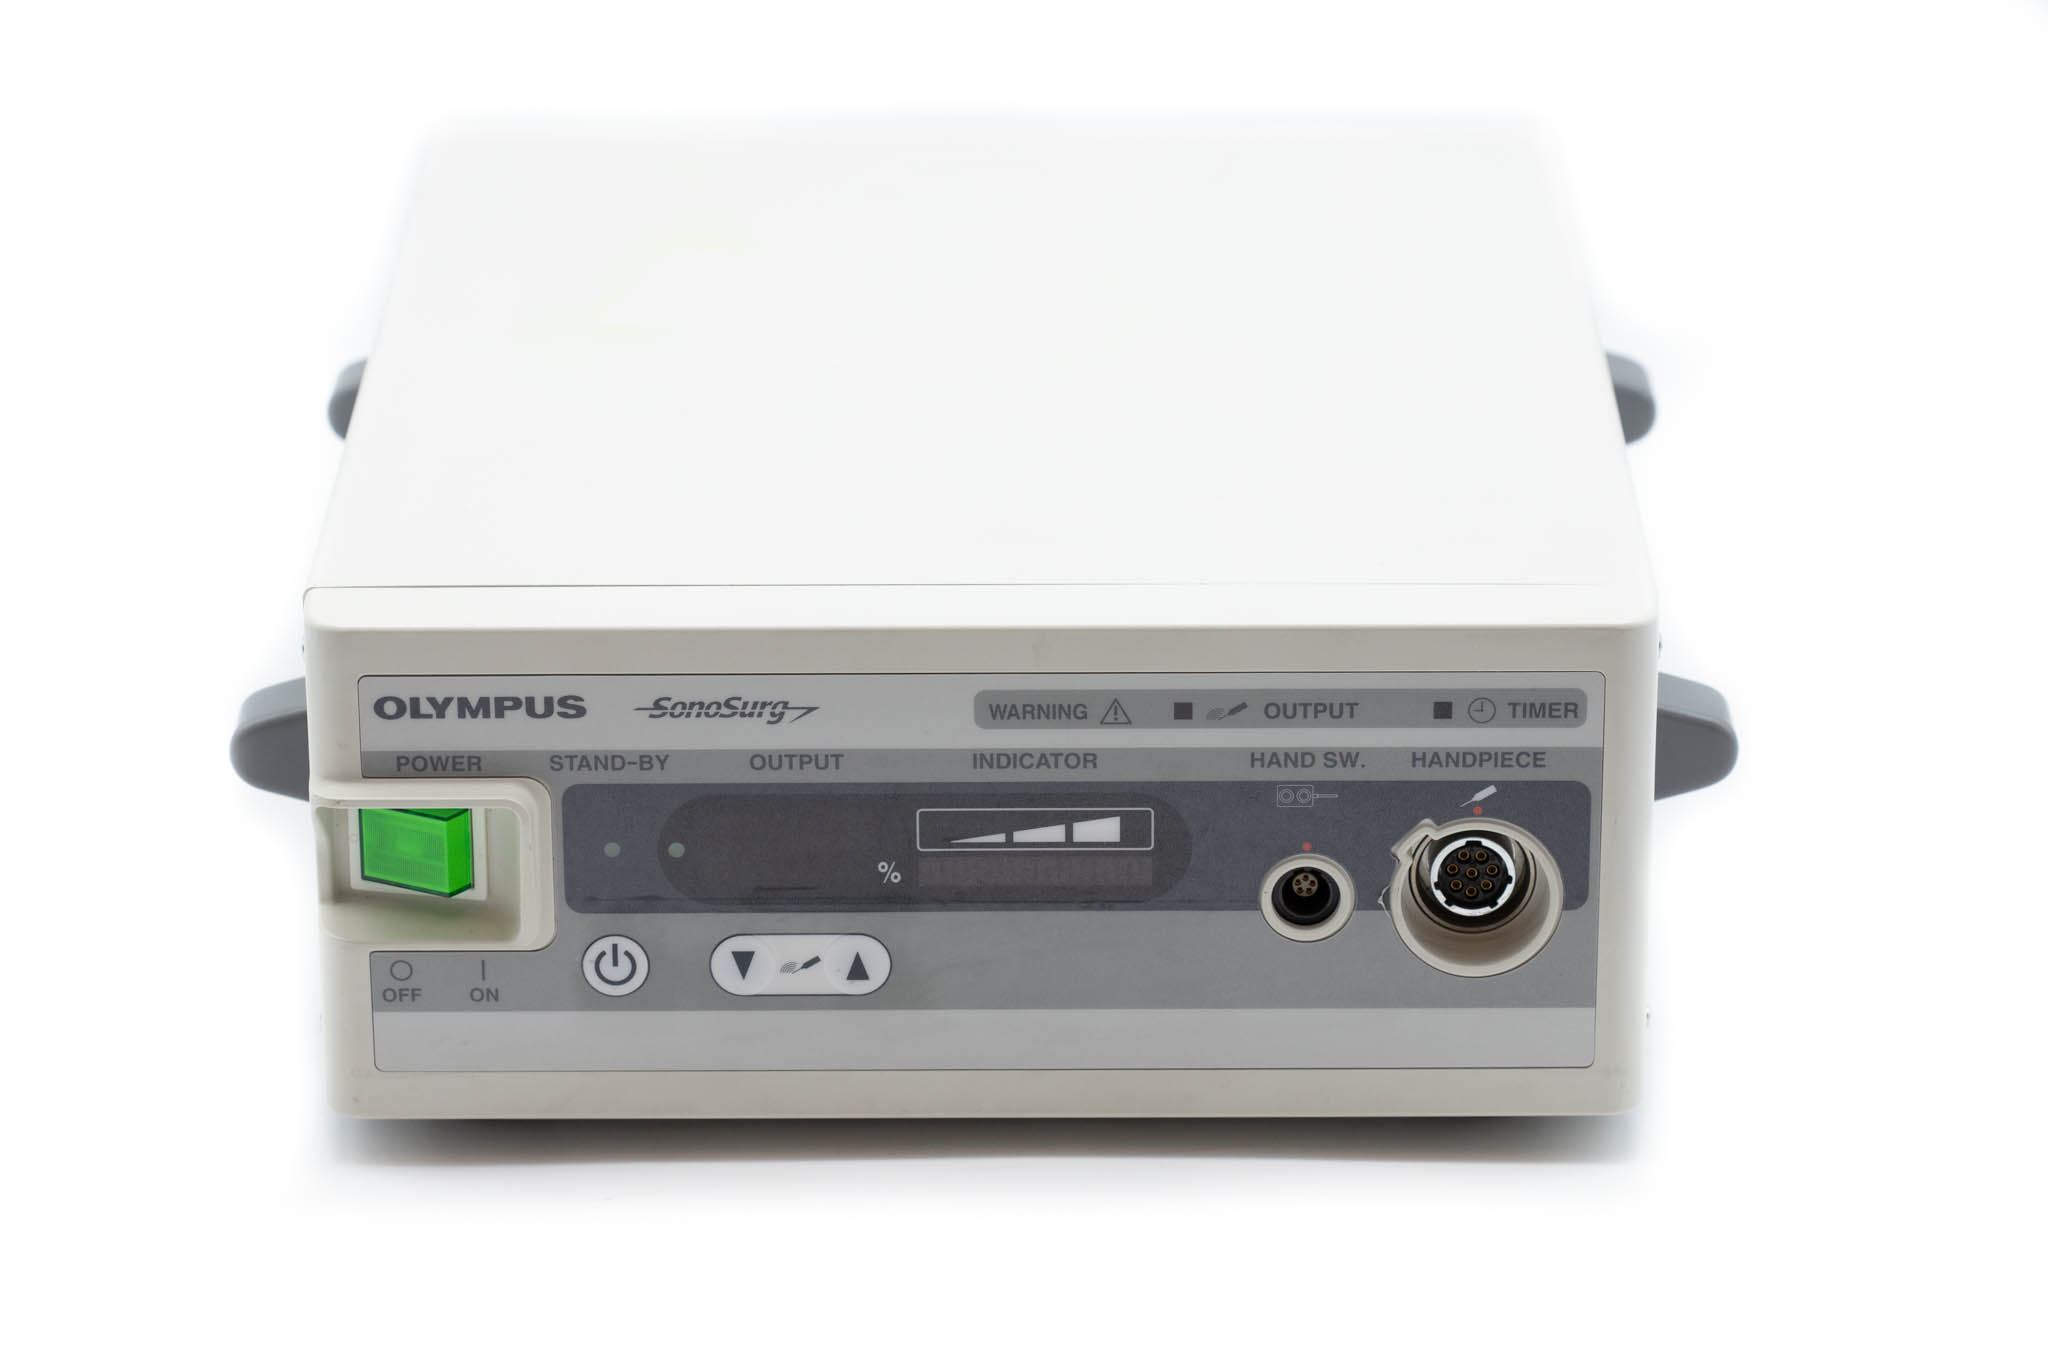 Olympus Ultrasonic Generator - SonoSurg G2